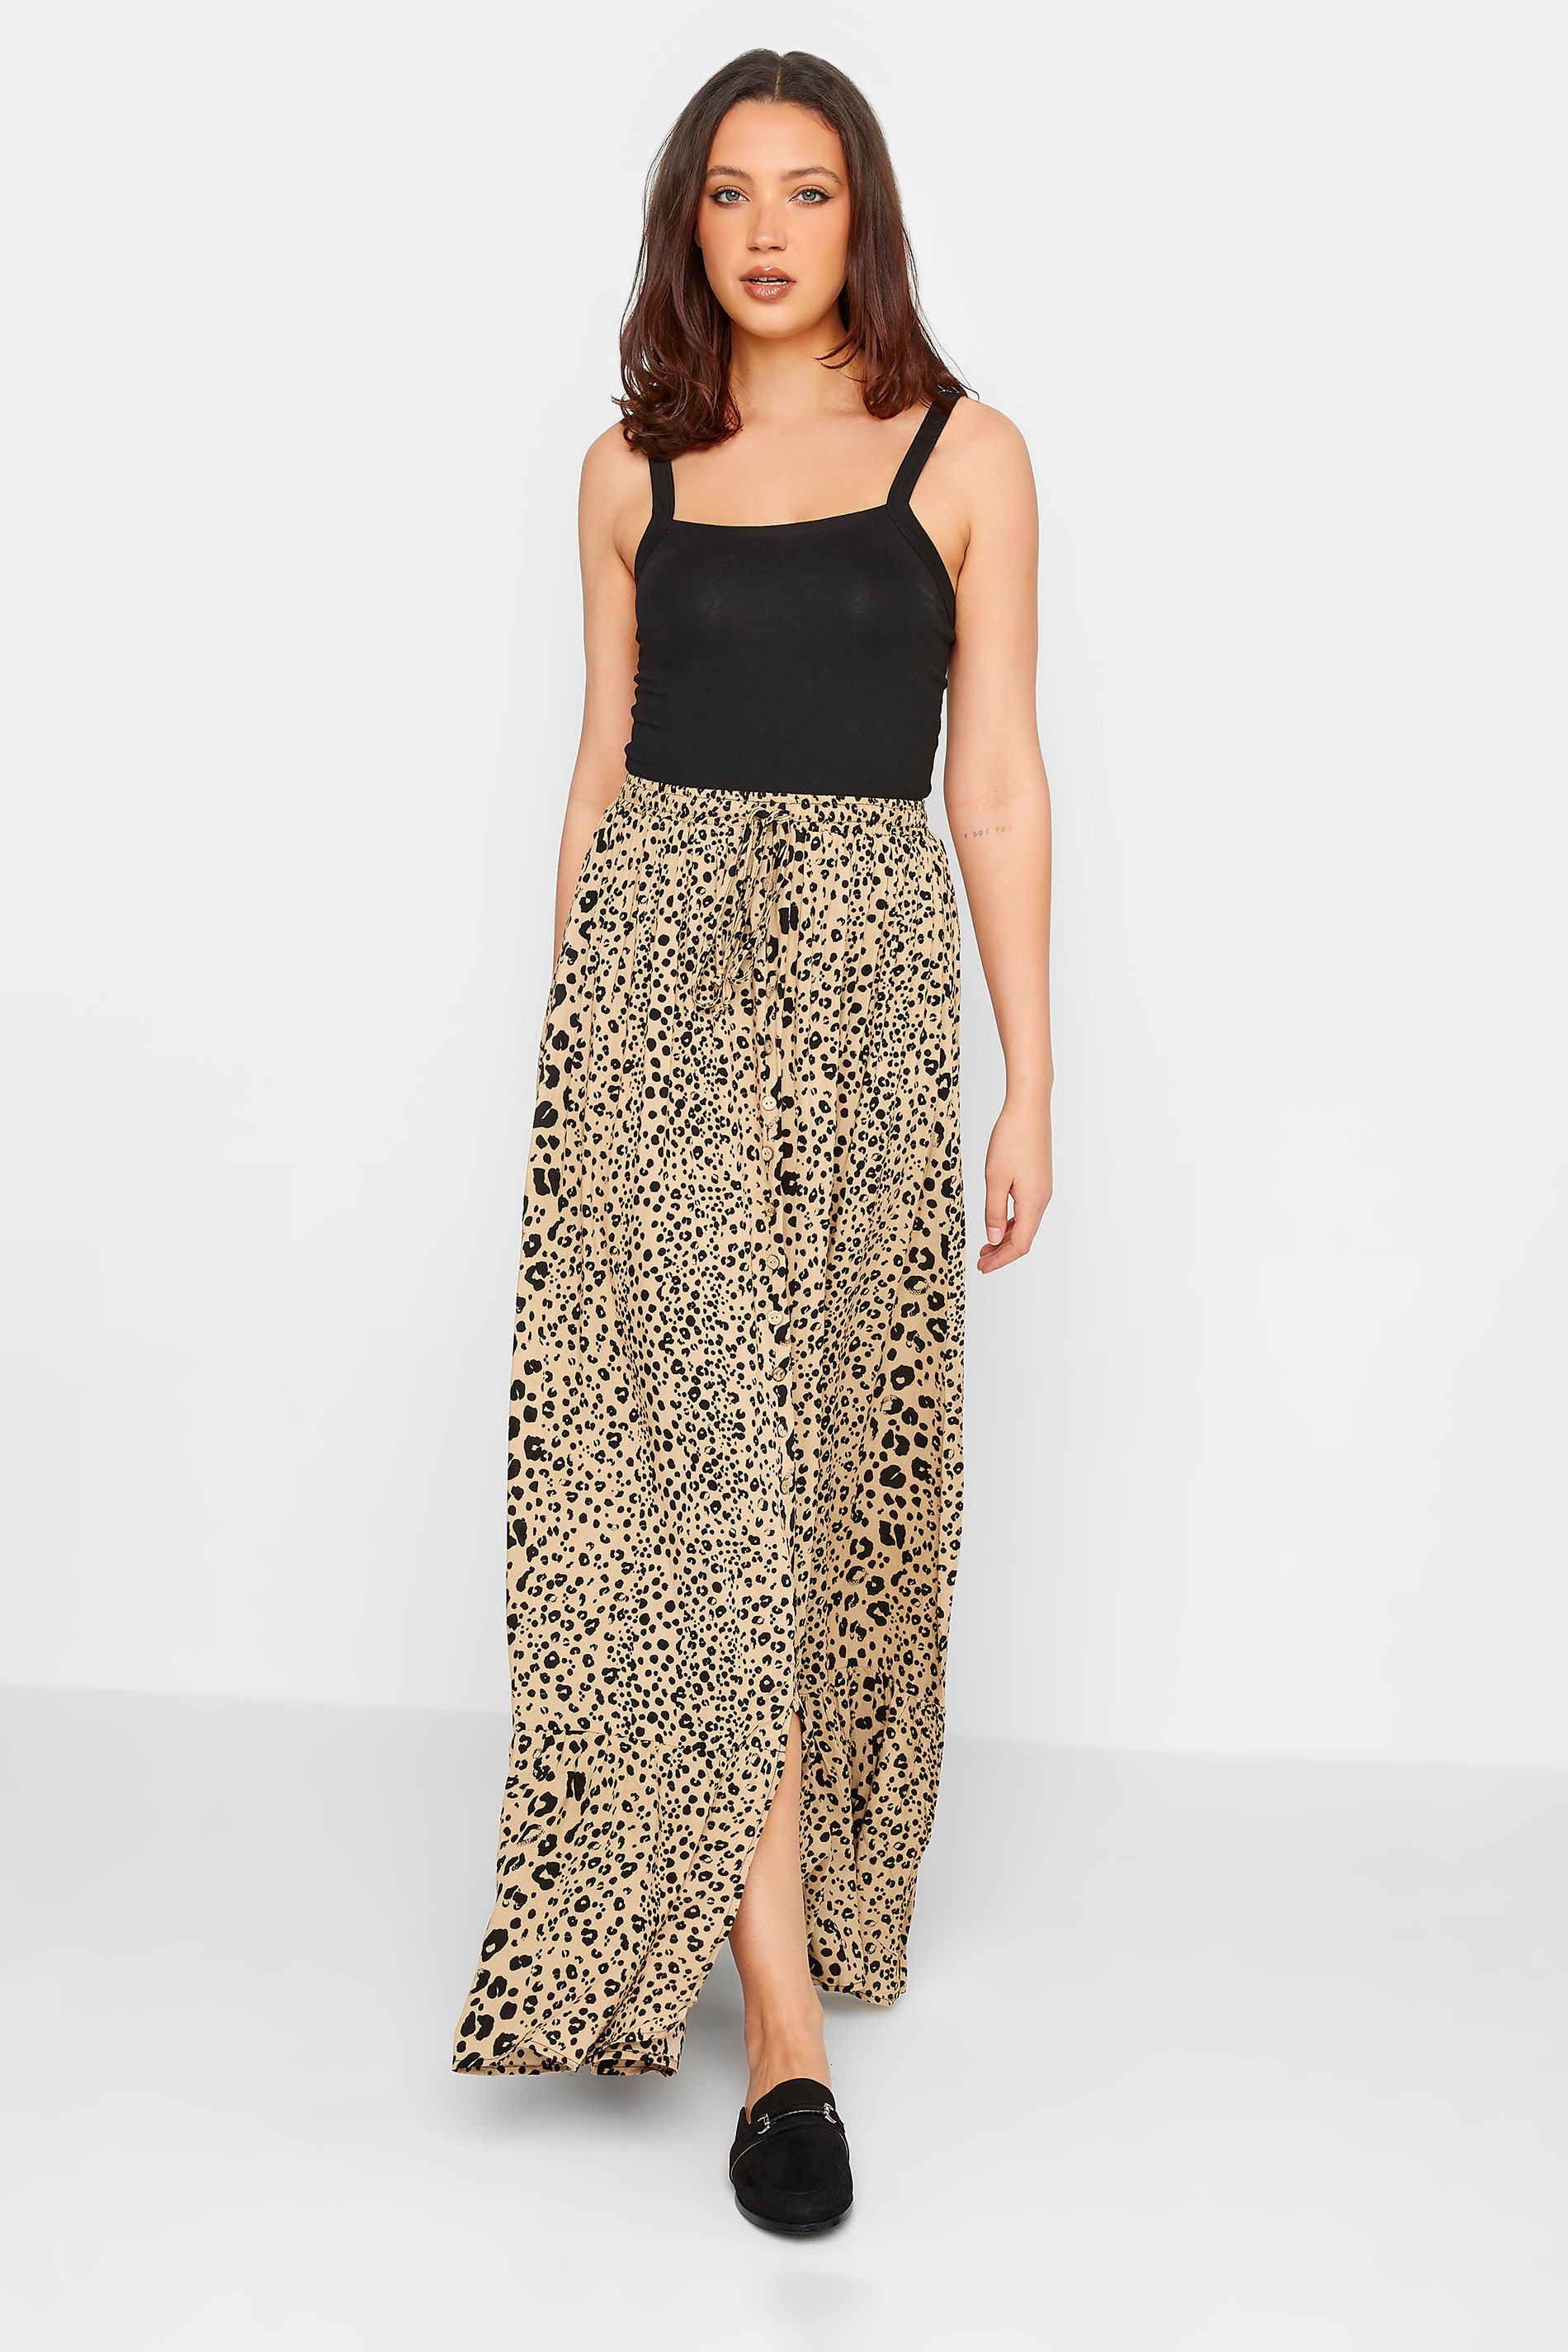 LTS Tall Women's Natural Brown Leopard Print Maxi Skirt | Long Tall Sally 2